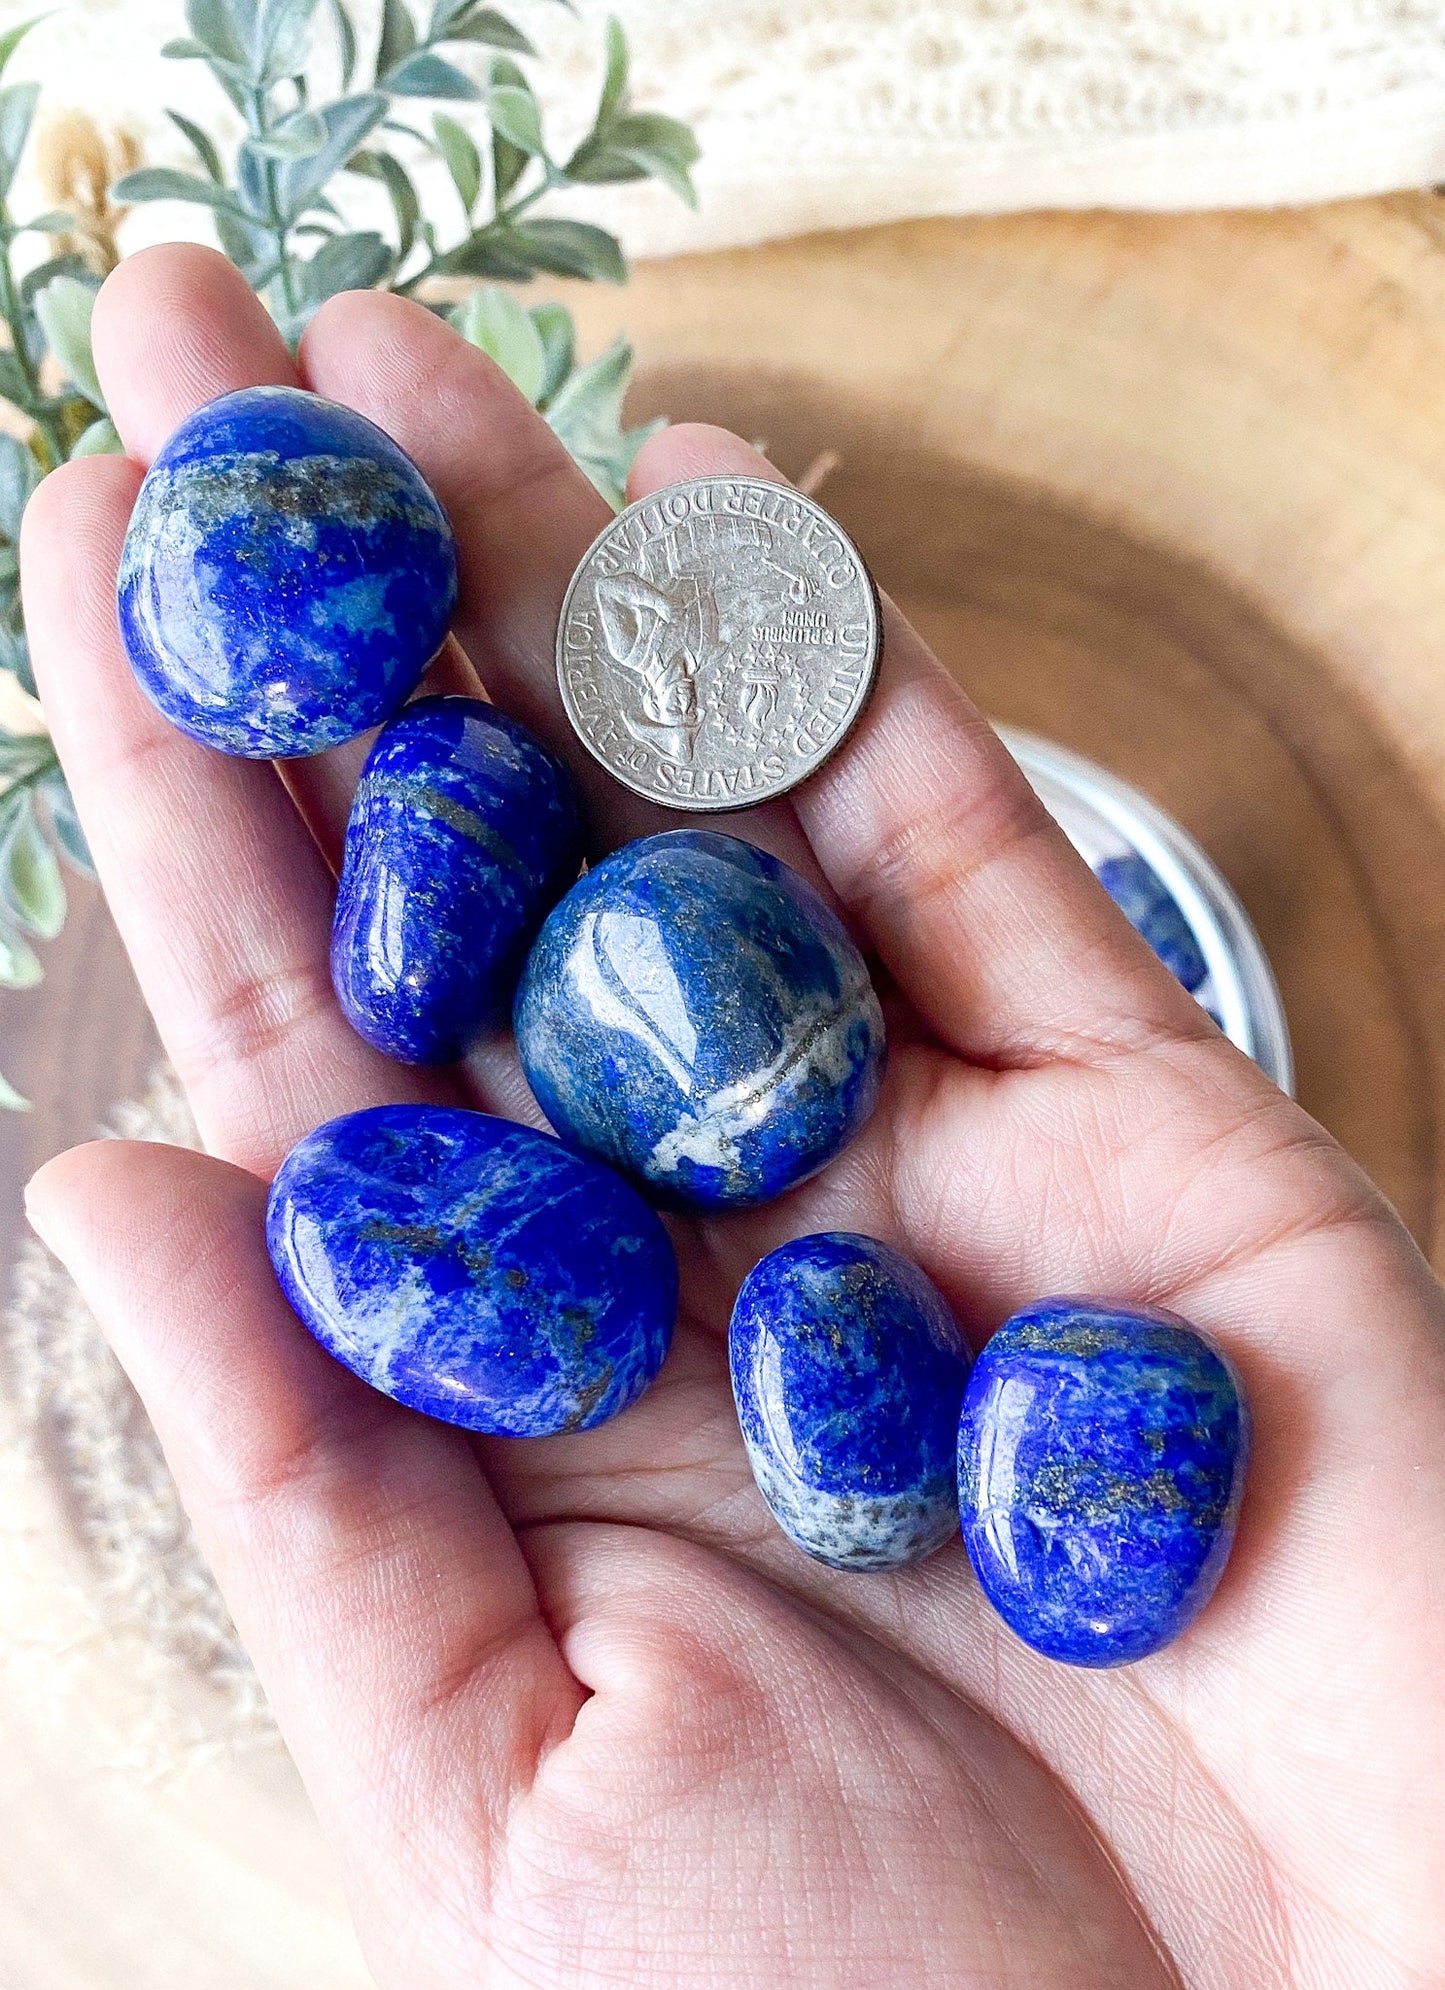 Lapis Lazuli tumbled, pocket stone